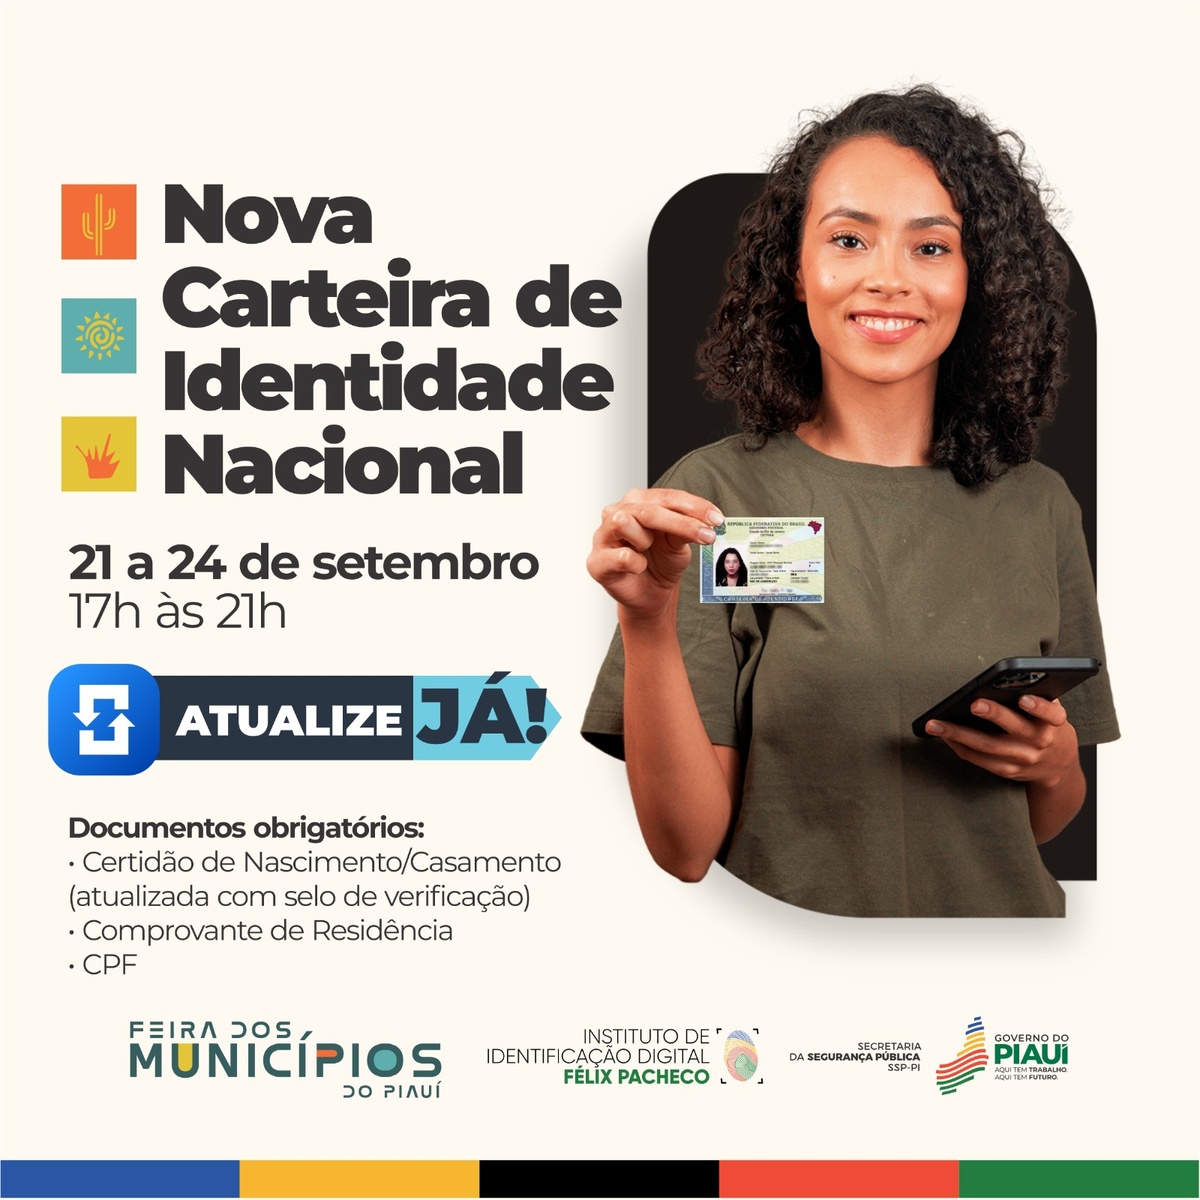 Emissão de carteiras de identidade é suspensa na tarde desta sexta-feira -  Cidades - R7 Correio do Povo